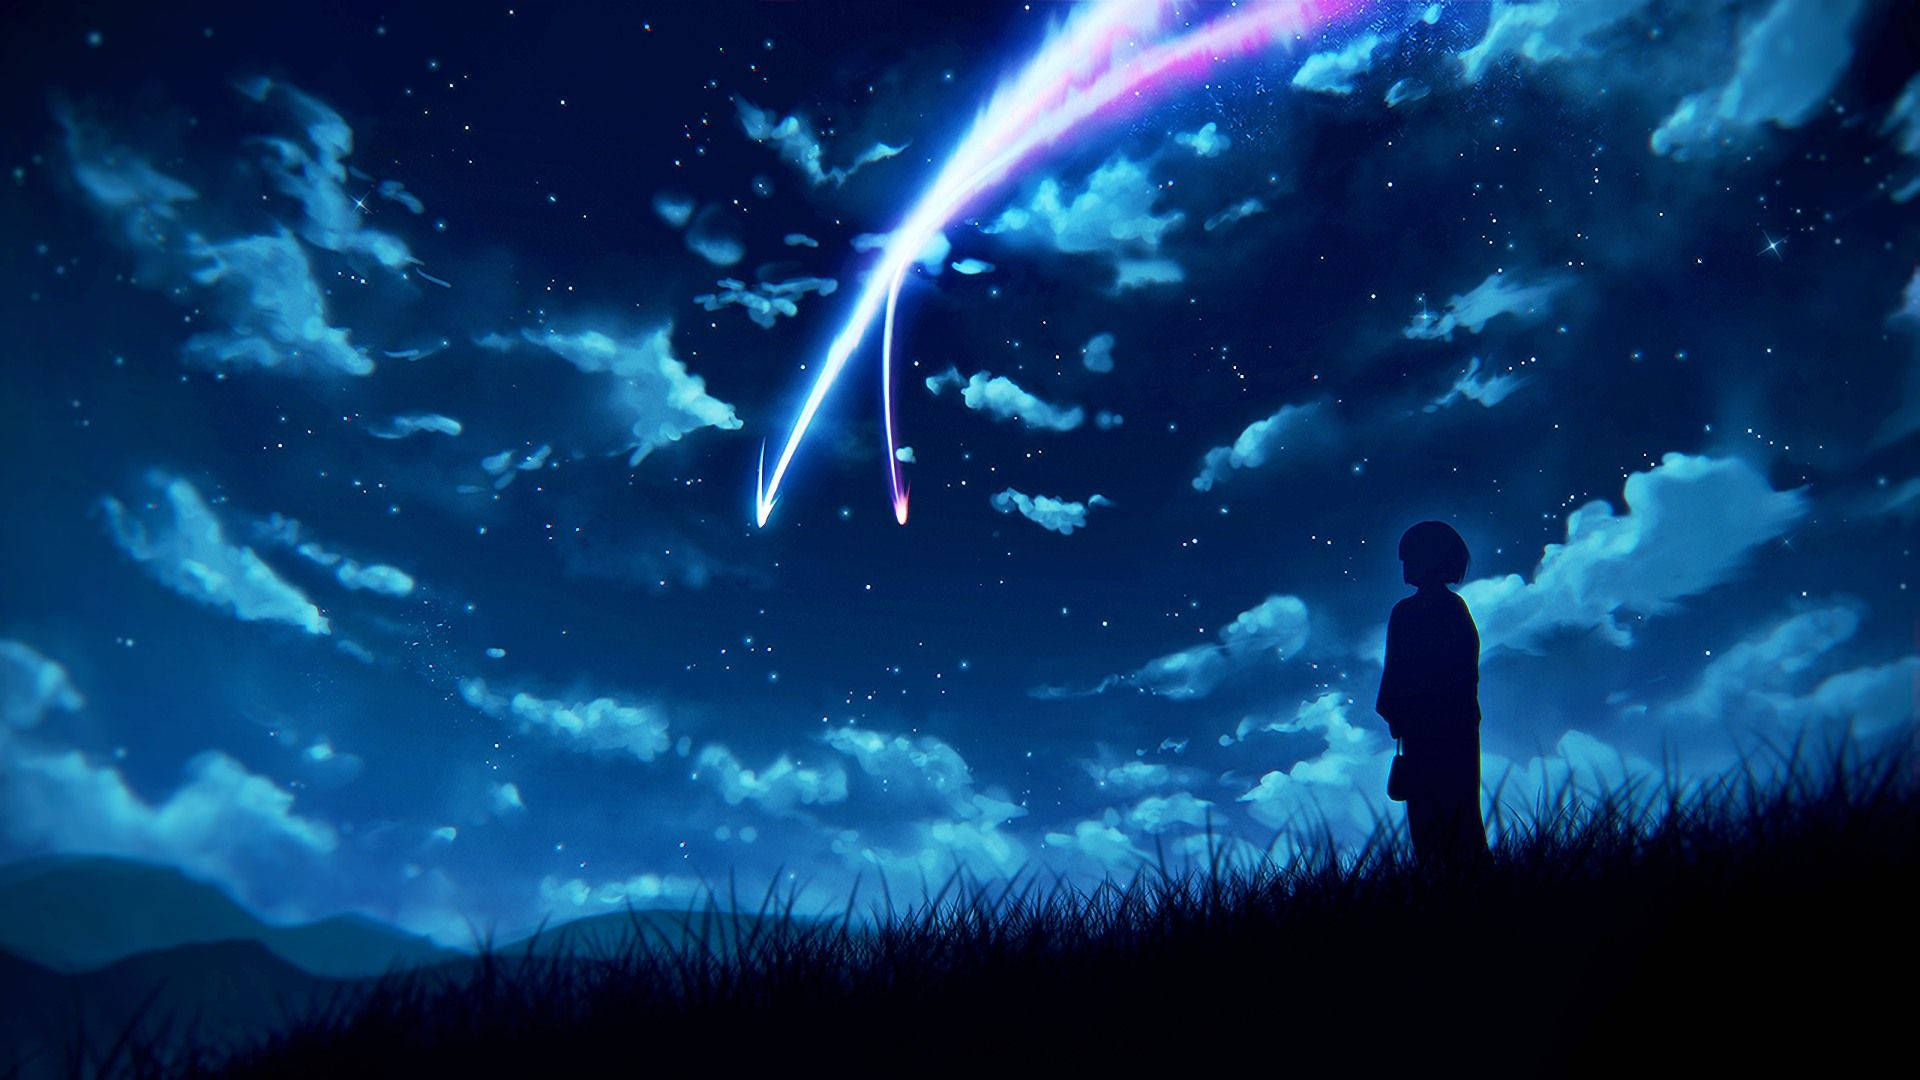 Anime Aesthetic Night Sky Wallpaper